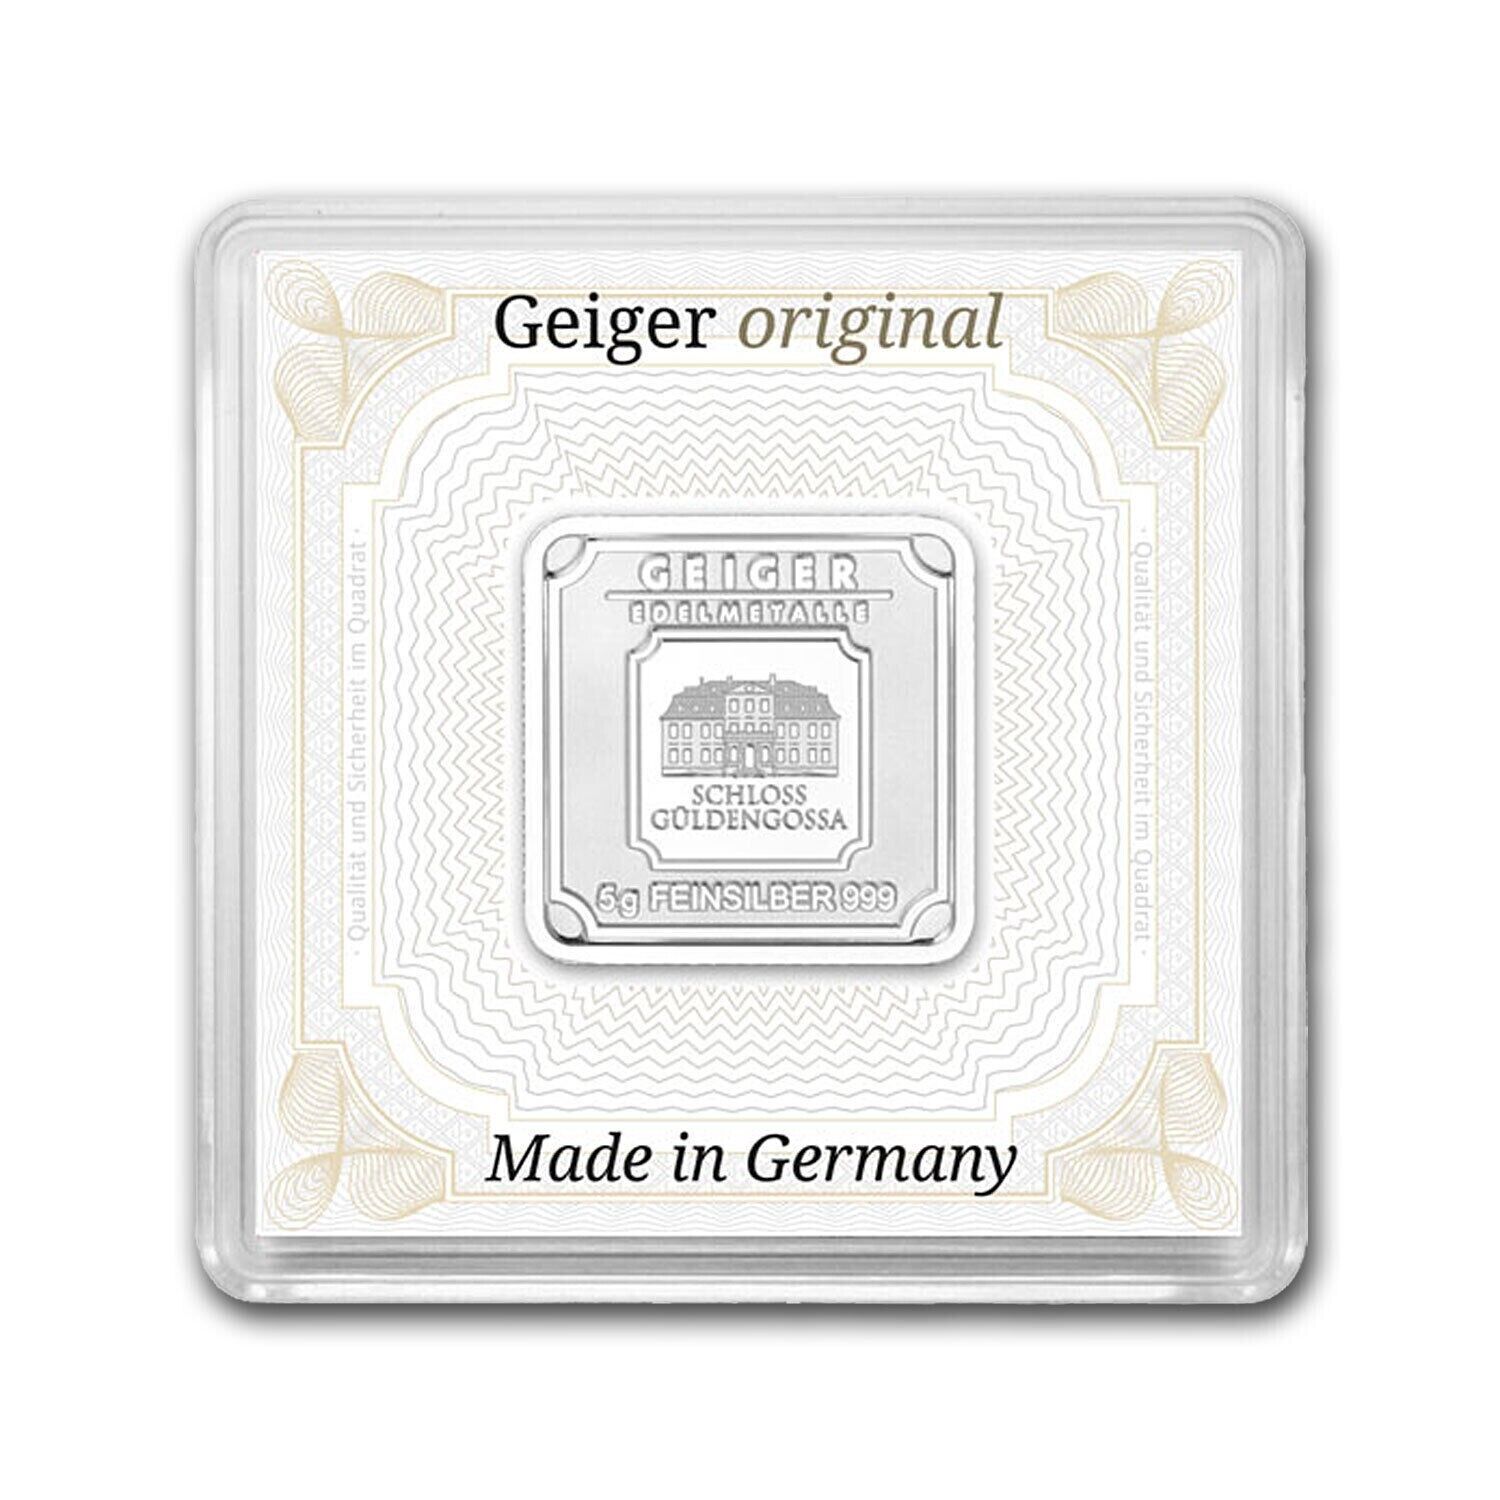 Geiger Original Schloss Guldengossa 5 gm Silver Square Minted Bar in Capsule